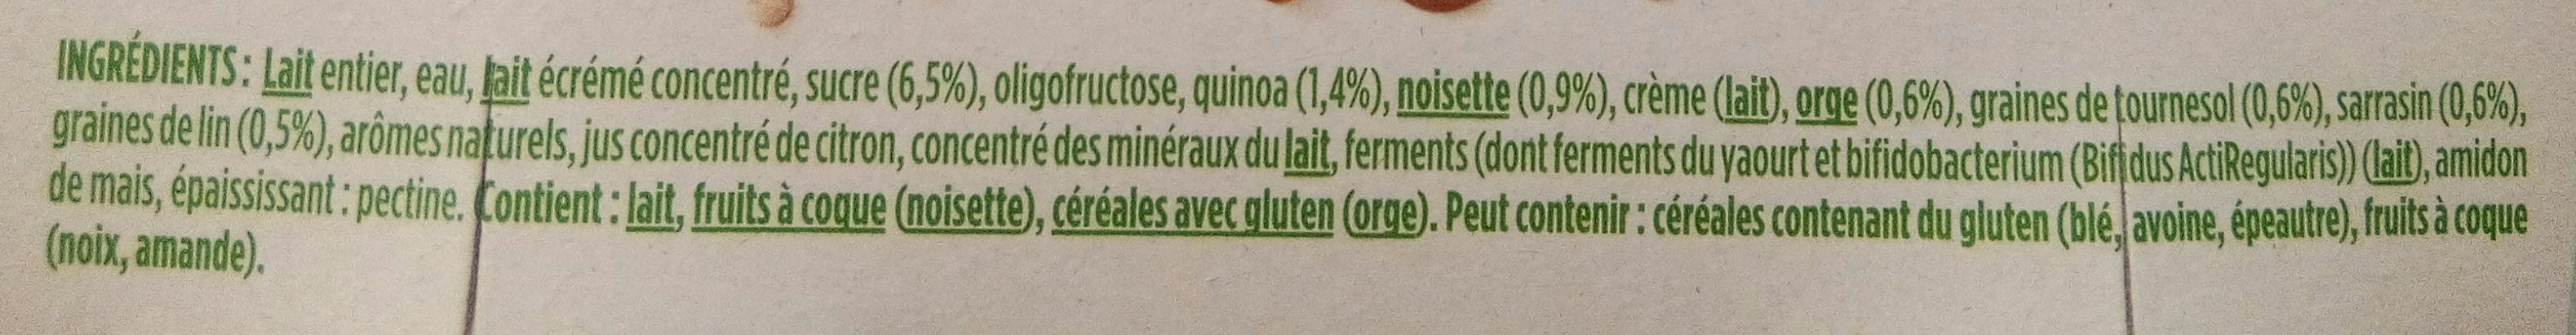 Activia au bifidus céréales quinoa noisette - Ingrediënten - fr